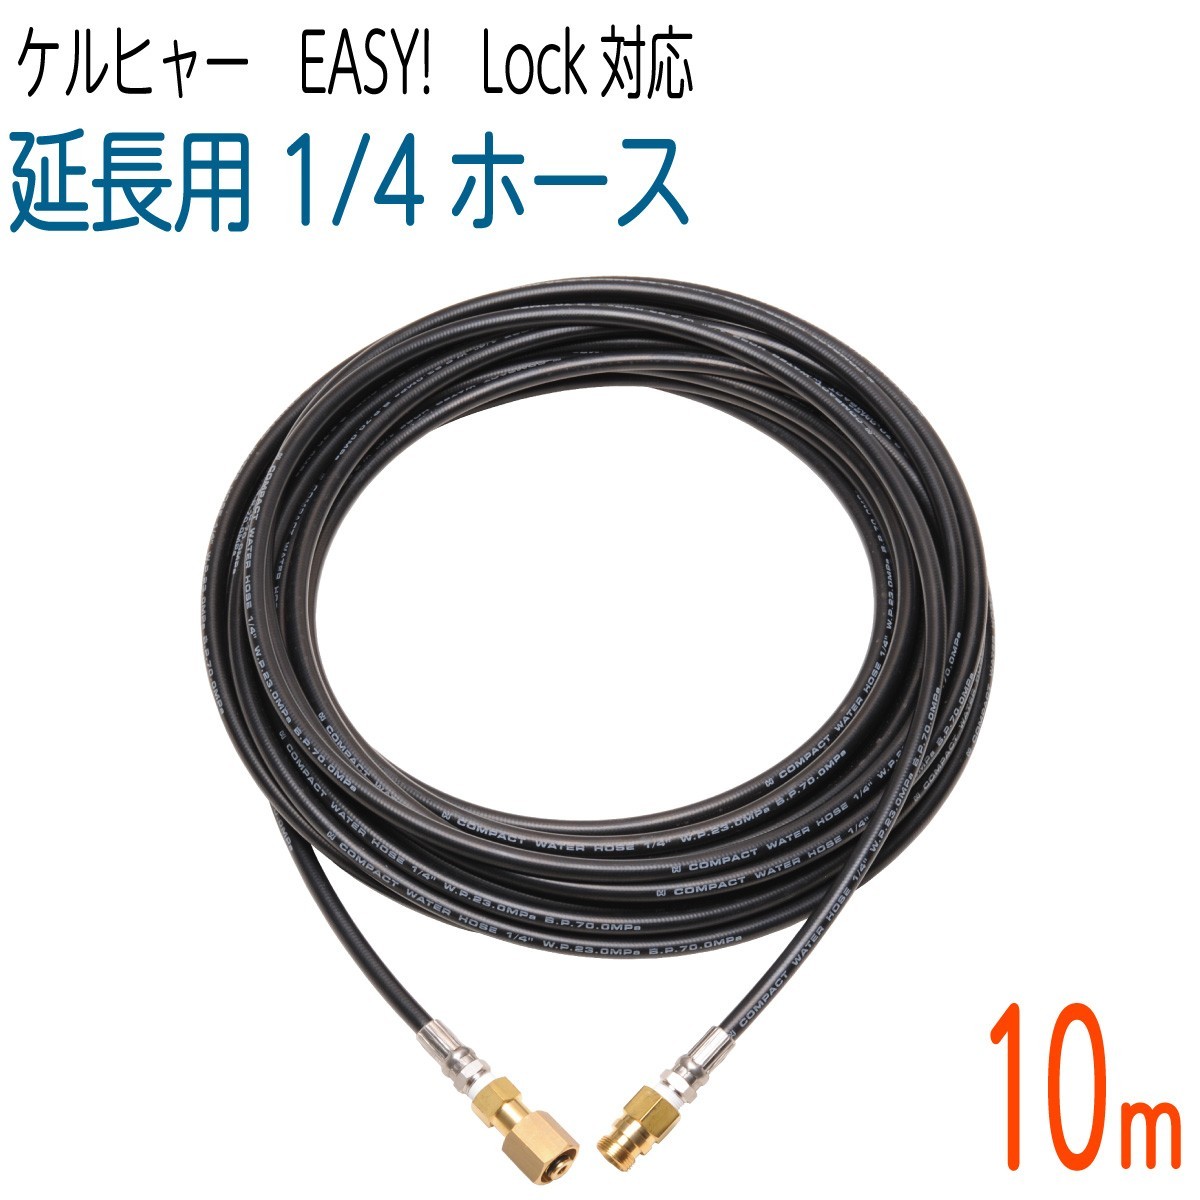 【10M】1/4サイズ ケルヒャー 新型HDシリーズ Easy!Lock 対応　コンパクトホース　延長高圧洗浄機ホース